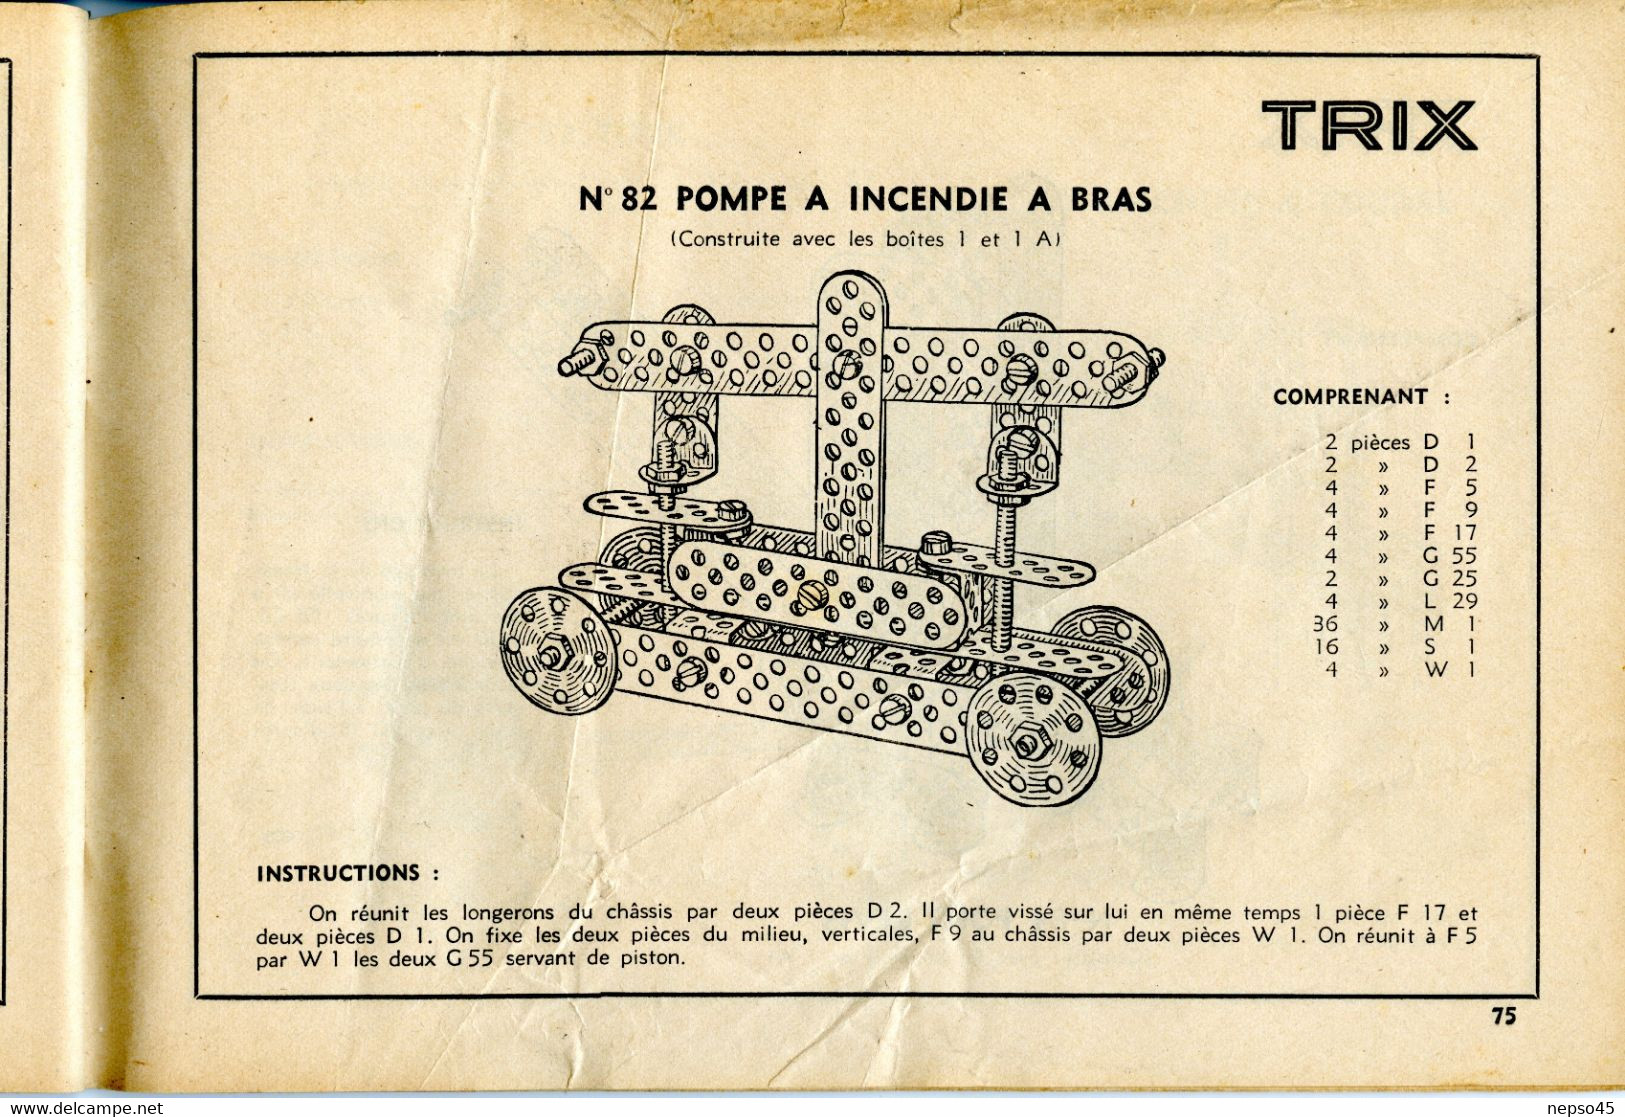 Album de Modèles pour Trix jeu  de construction métallique concurrent du système Meccano.